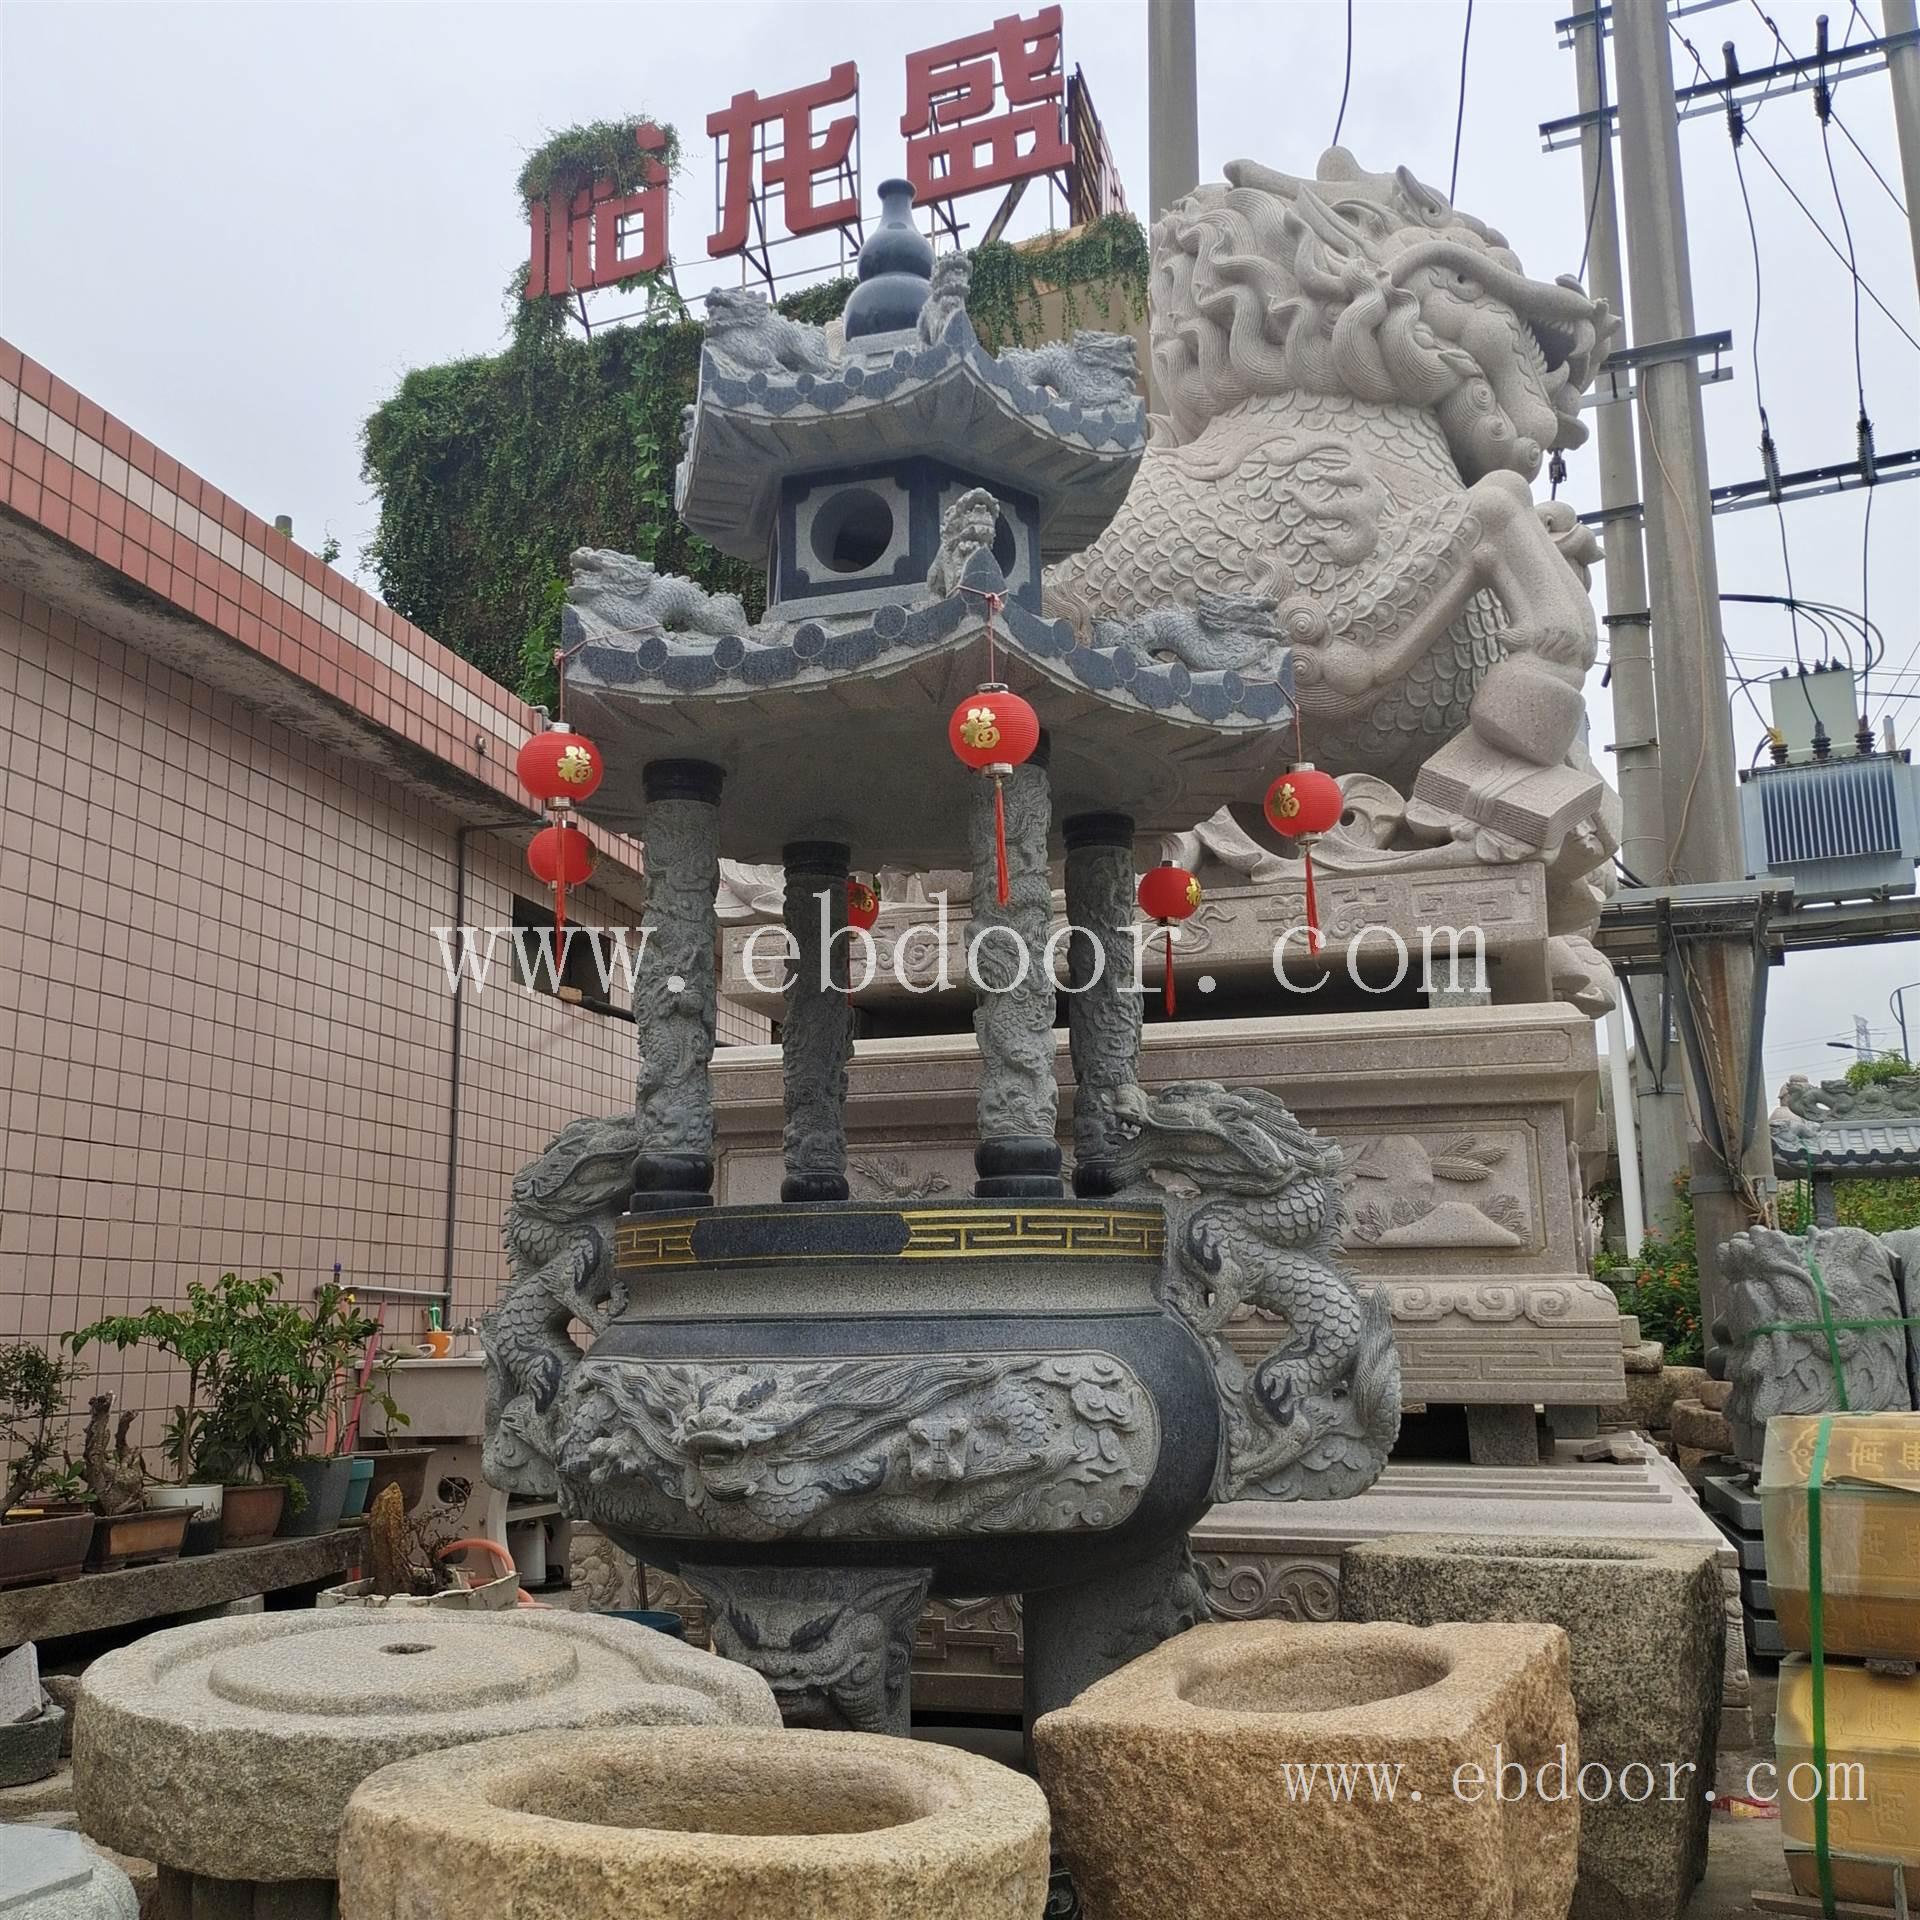 香港寺庙圆形石香炉 泰国石雕香炉雕刻 供应石雕香炉 